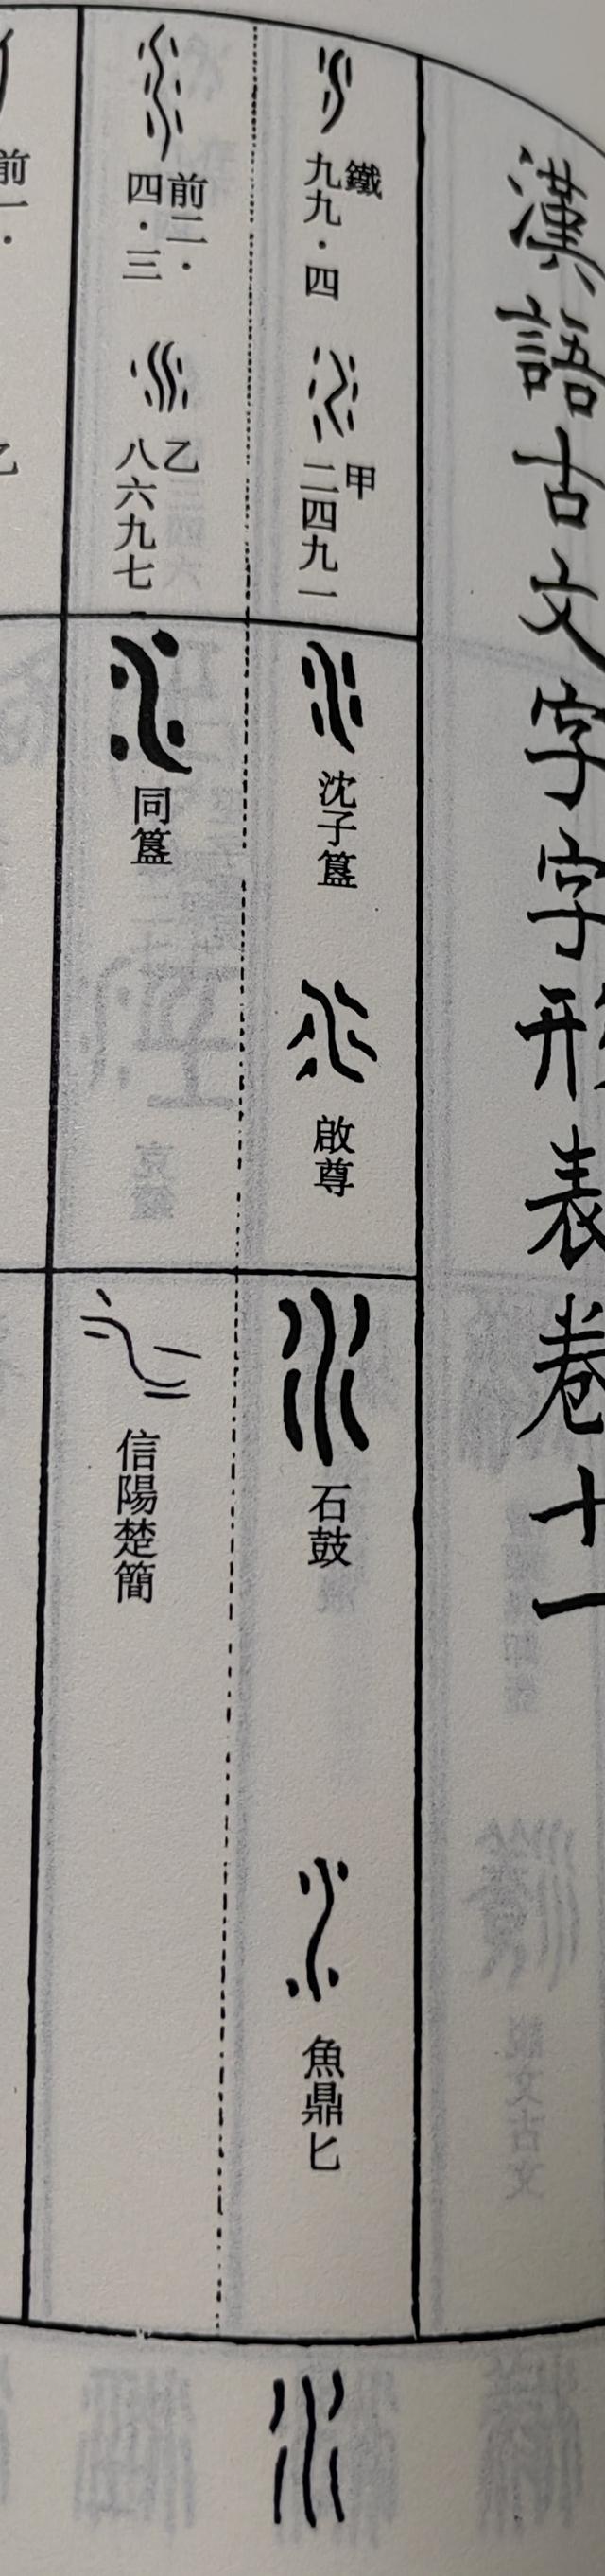 五行：“金木水火土”的甲骨文、金文、小篆等字体